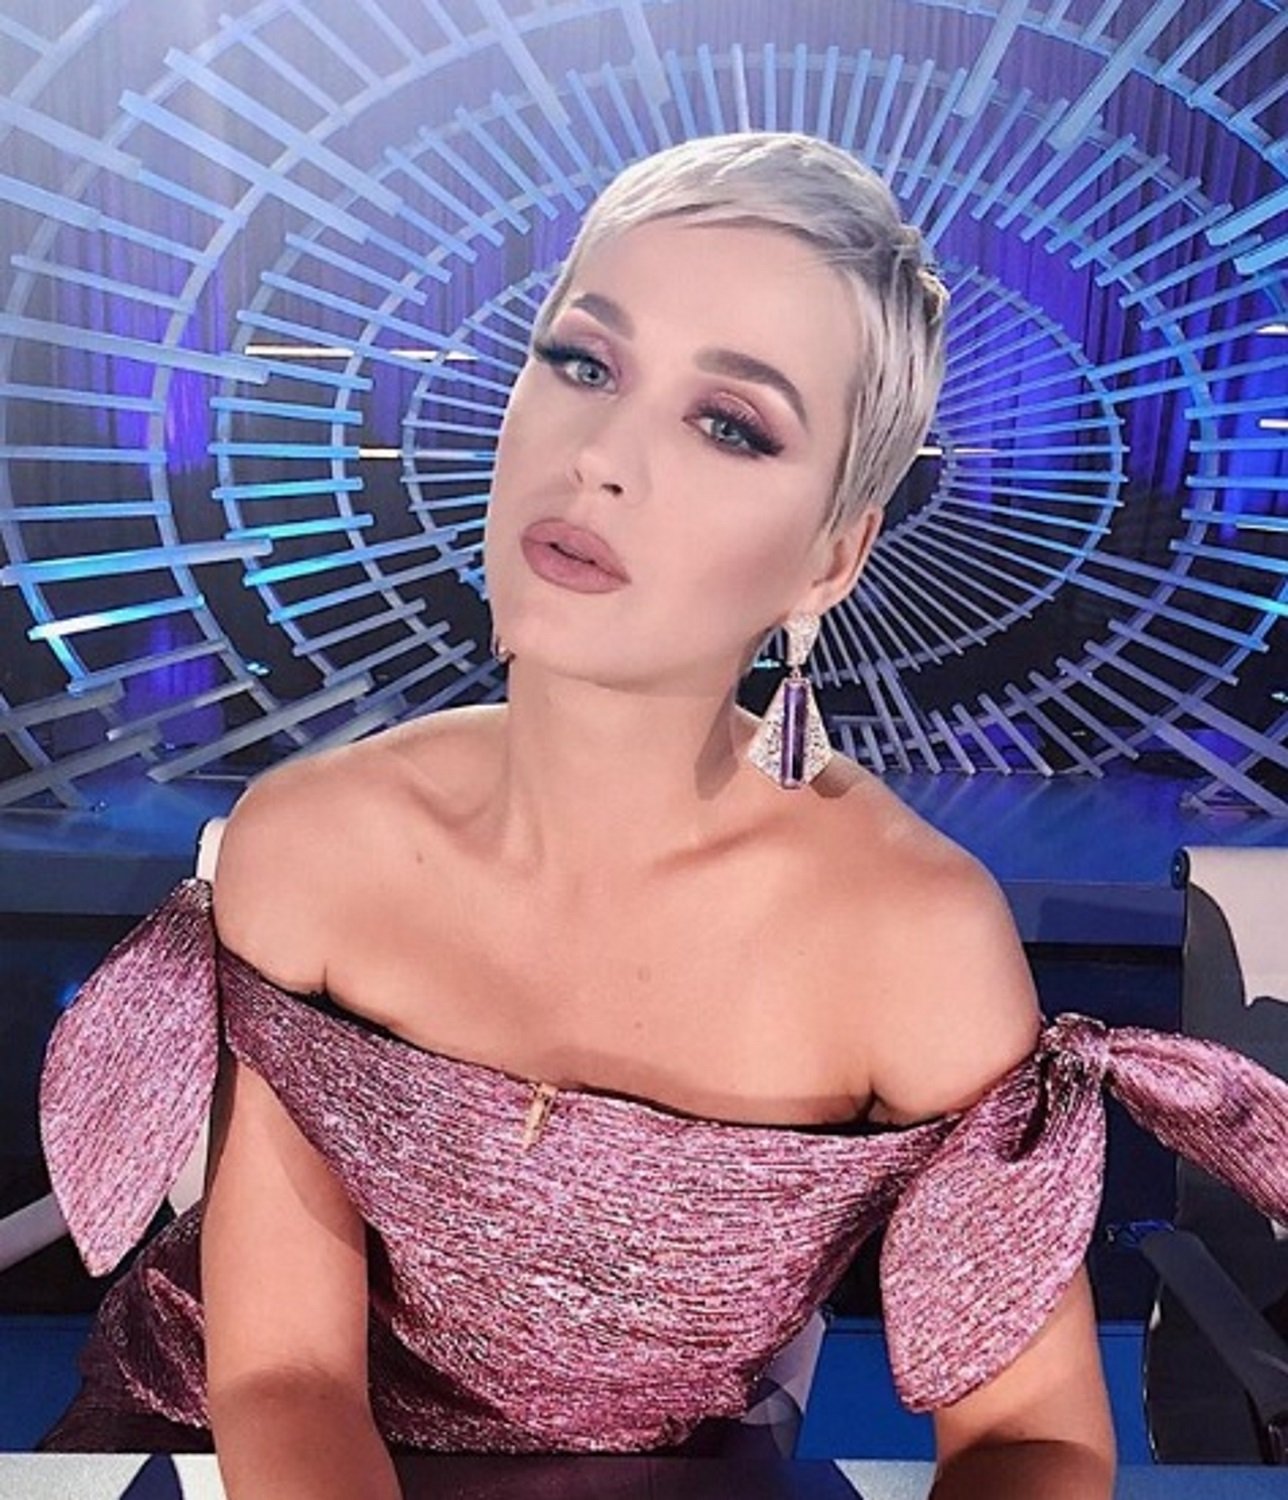 Radical cambio de 'look': Katy Perry, irreconocible